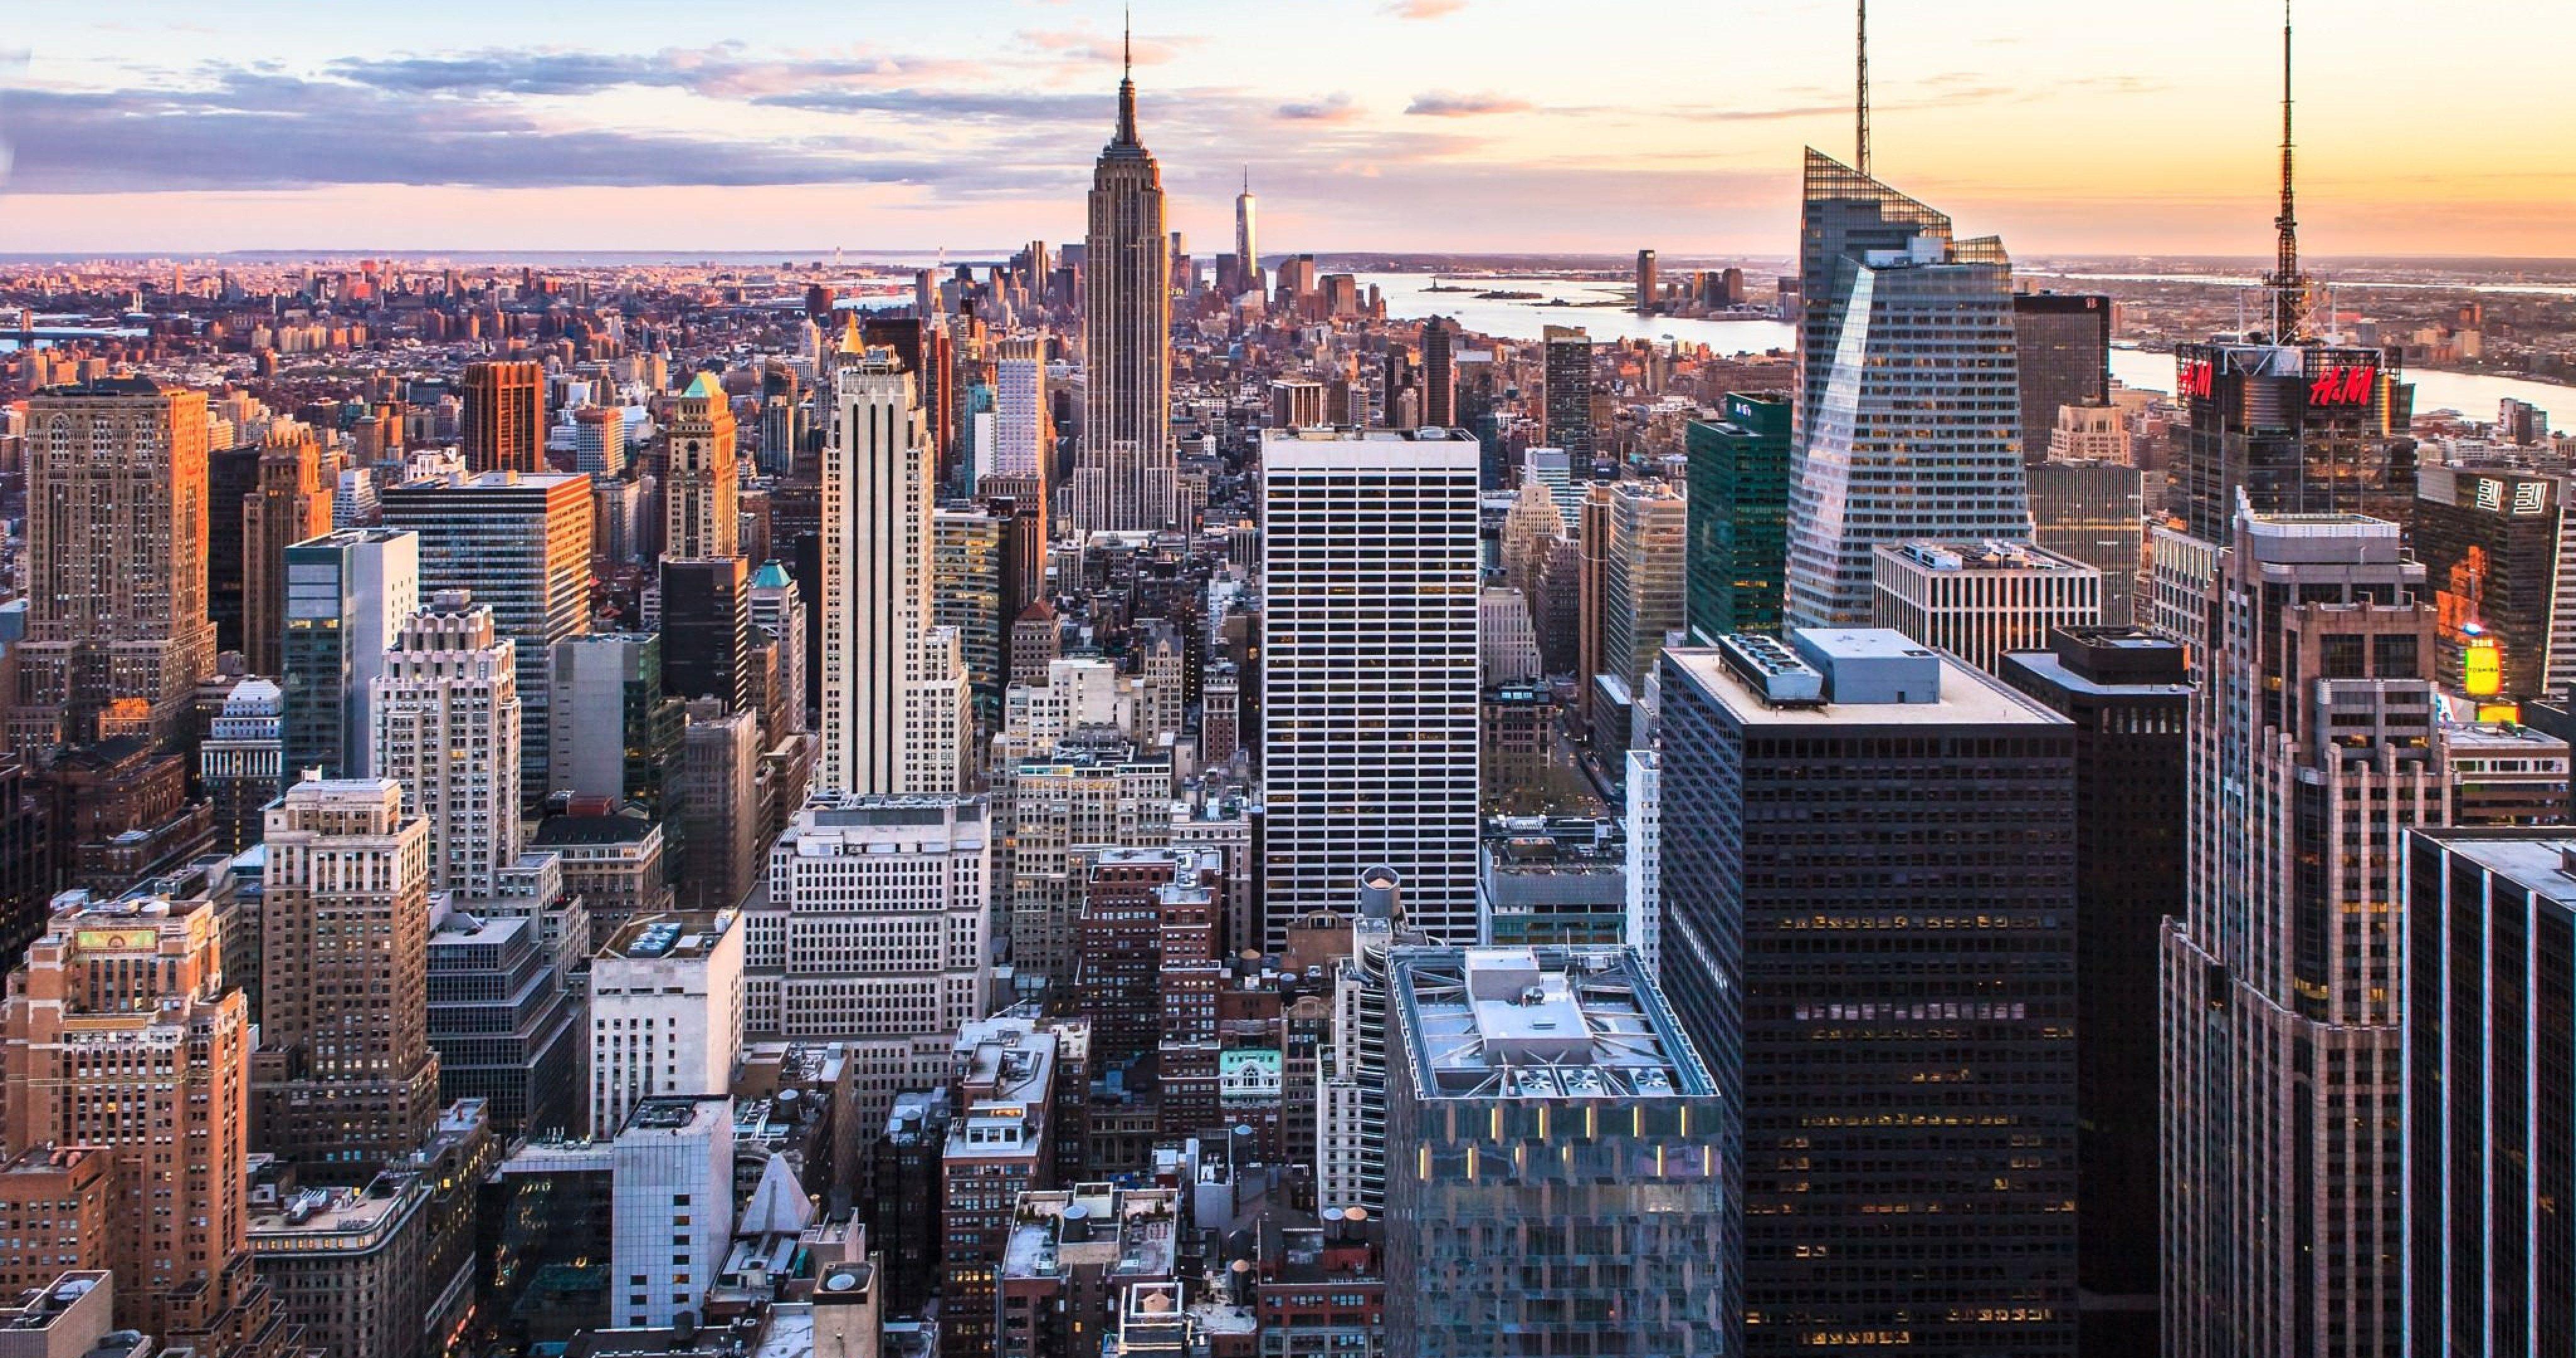 Hình nền New York City 4K Ultra HD: Hãy chào đón vào tầm nhìn choáng ngợp với hình nền New York City 4K Ultra HD! Với chất lượng 4K Ultra HD, bức ảnh sẽ đưa bạn đến trải nghiệm xem đáng nhớ nhất về thành phố thế giới tuyệt đẹp này.